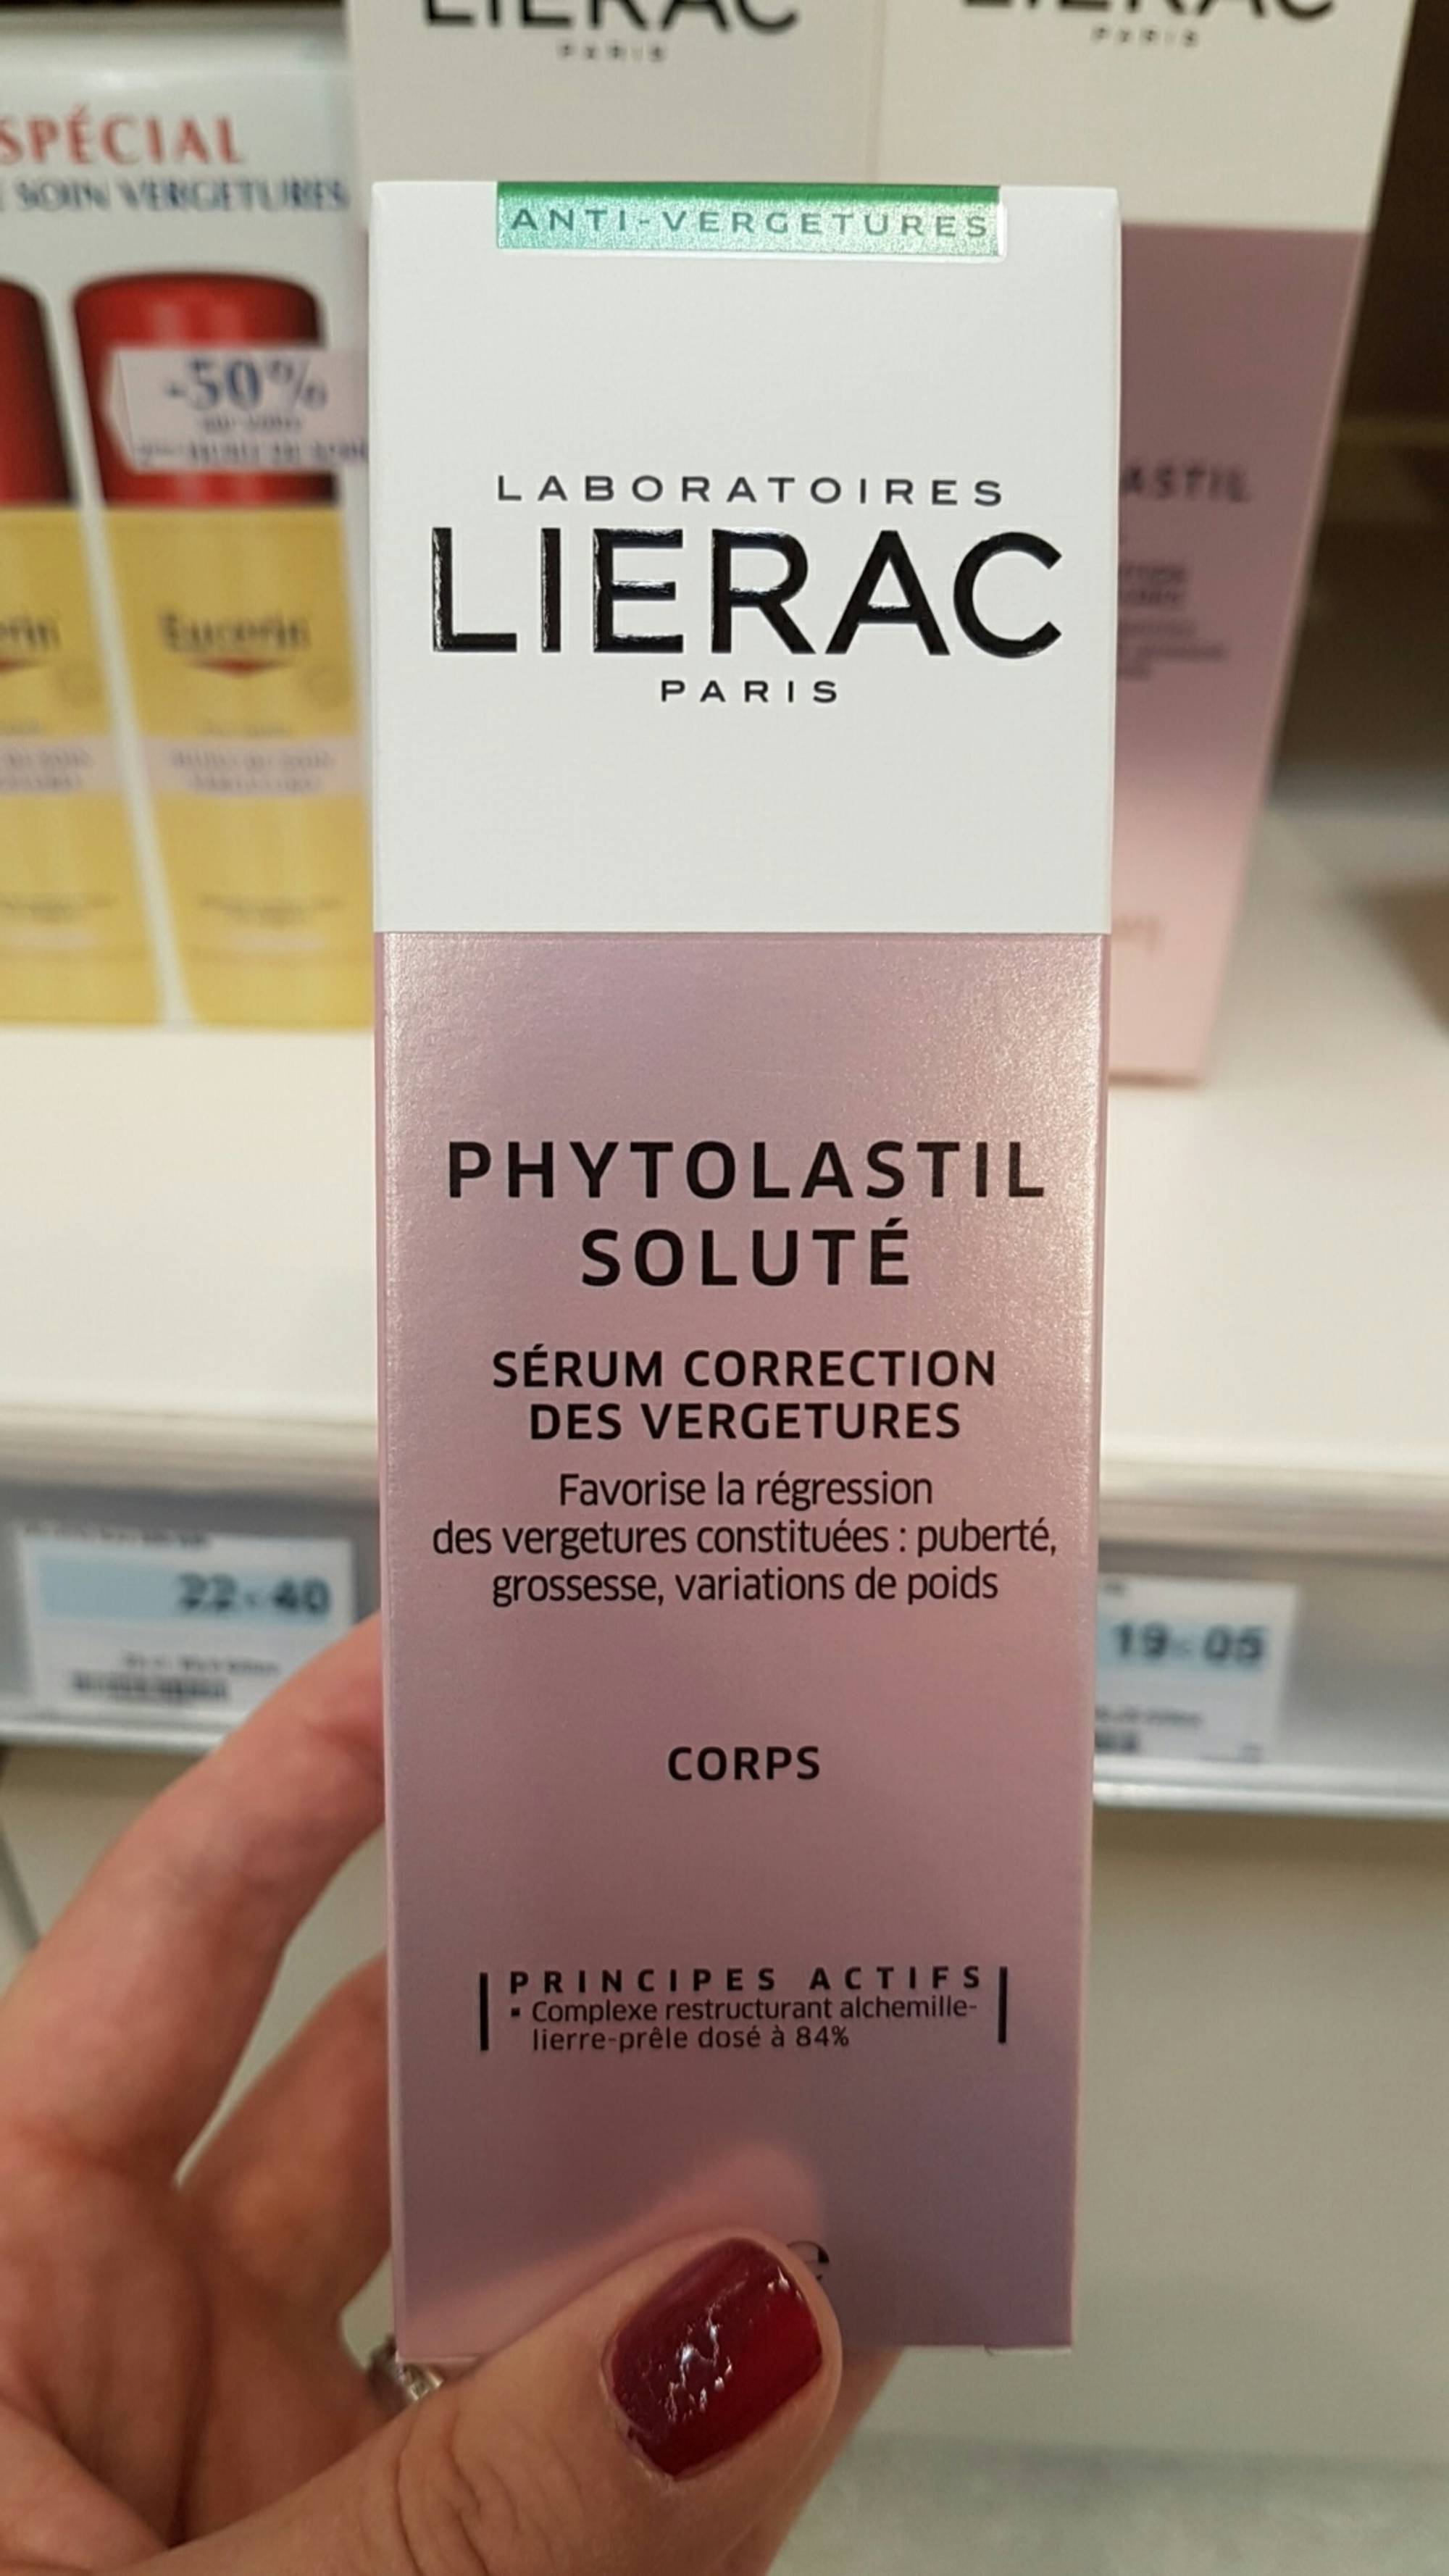 LIÉRAC - Phytolastil soluté - Sérum correction des vergetures